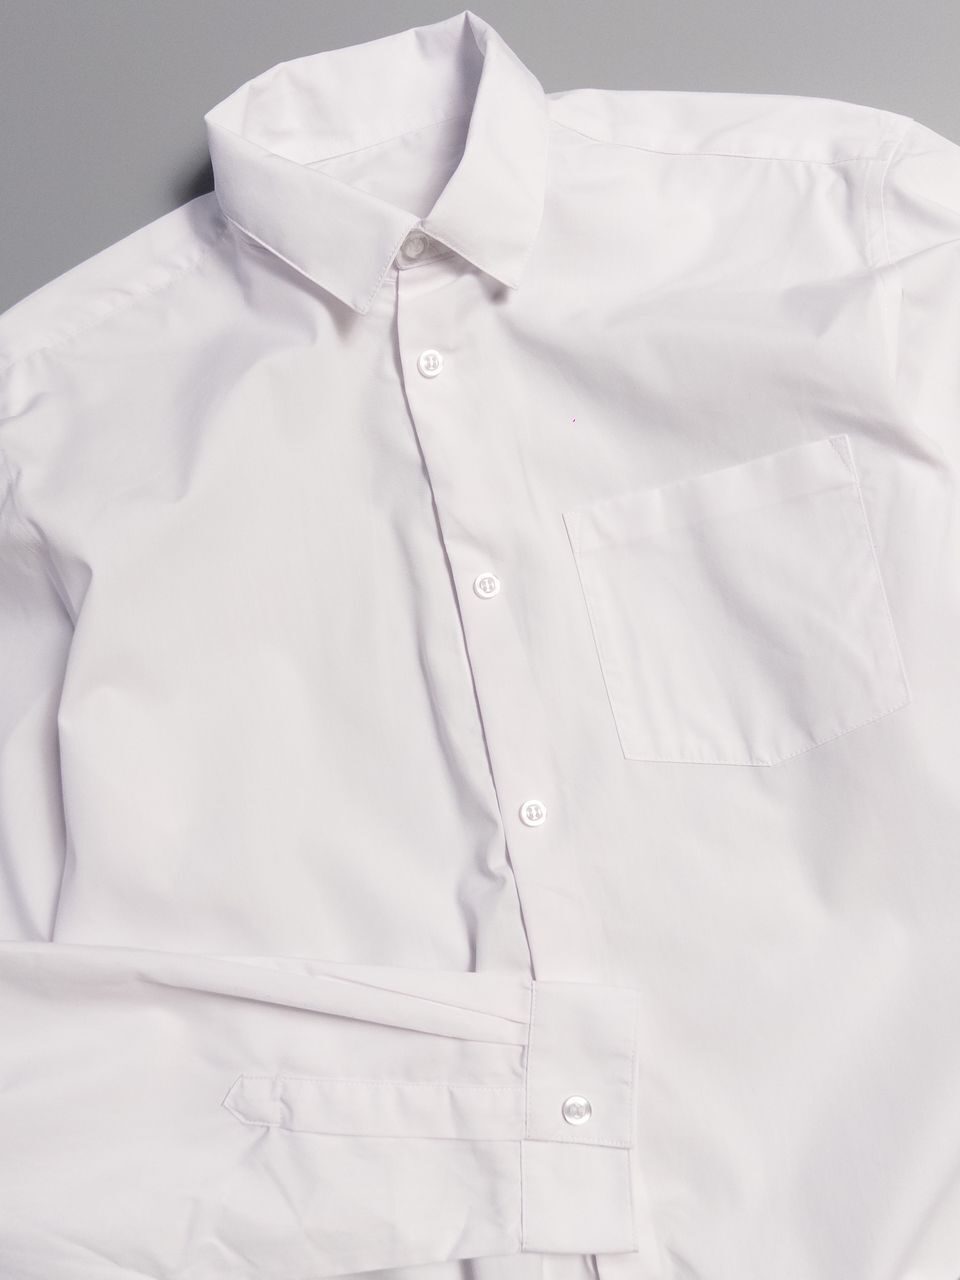 Рубашка с длинным рукавом застежка липучка/две нижние пуговицы зашиты/надевается через голову с карманом цвет белый рост 179-183 см (rus S) George